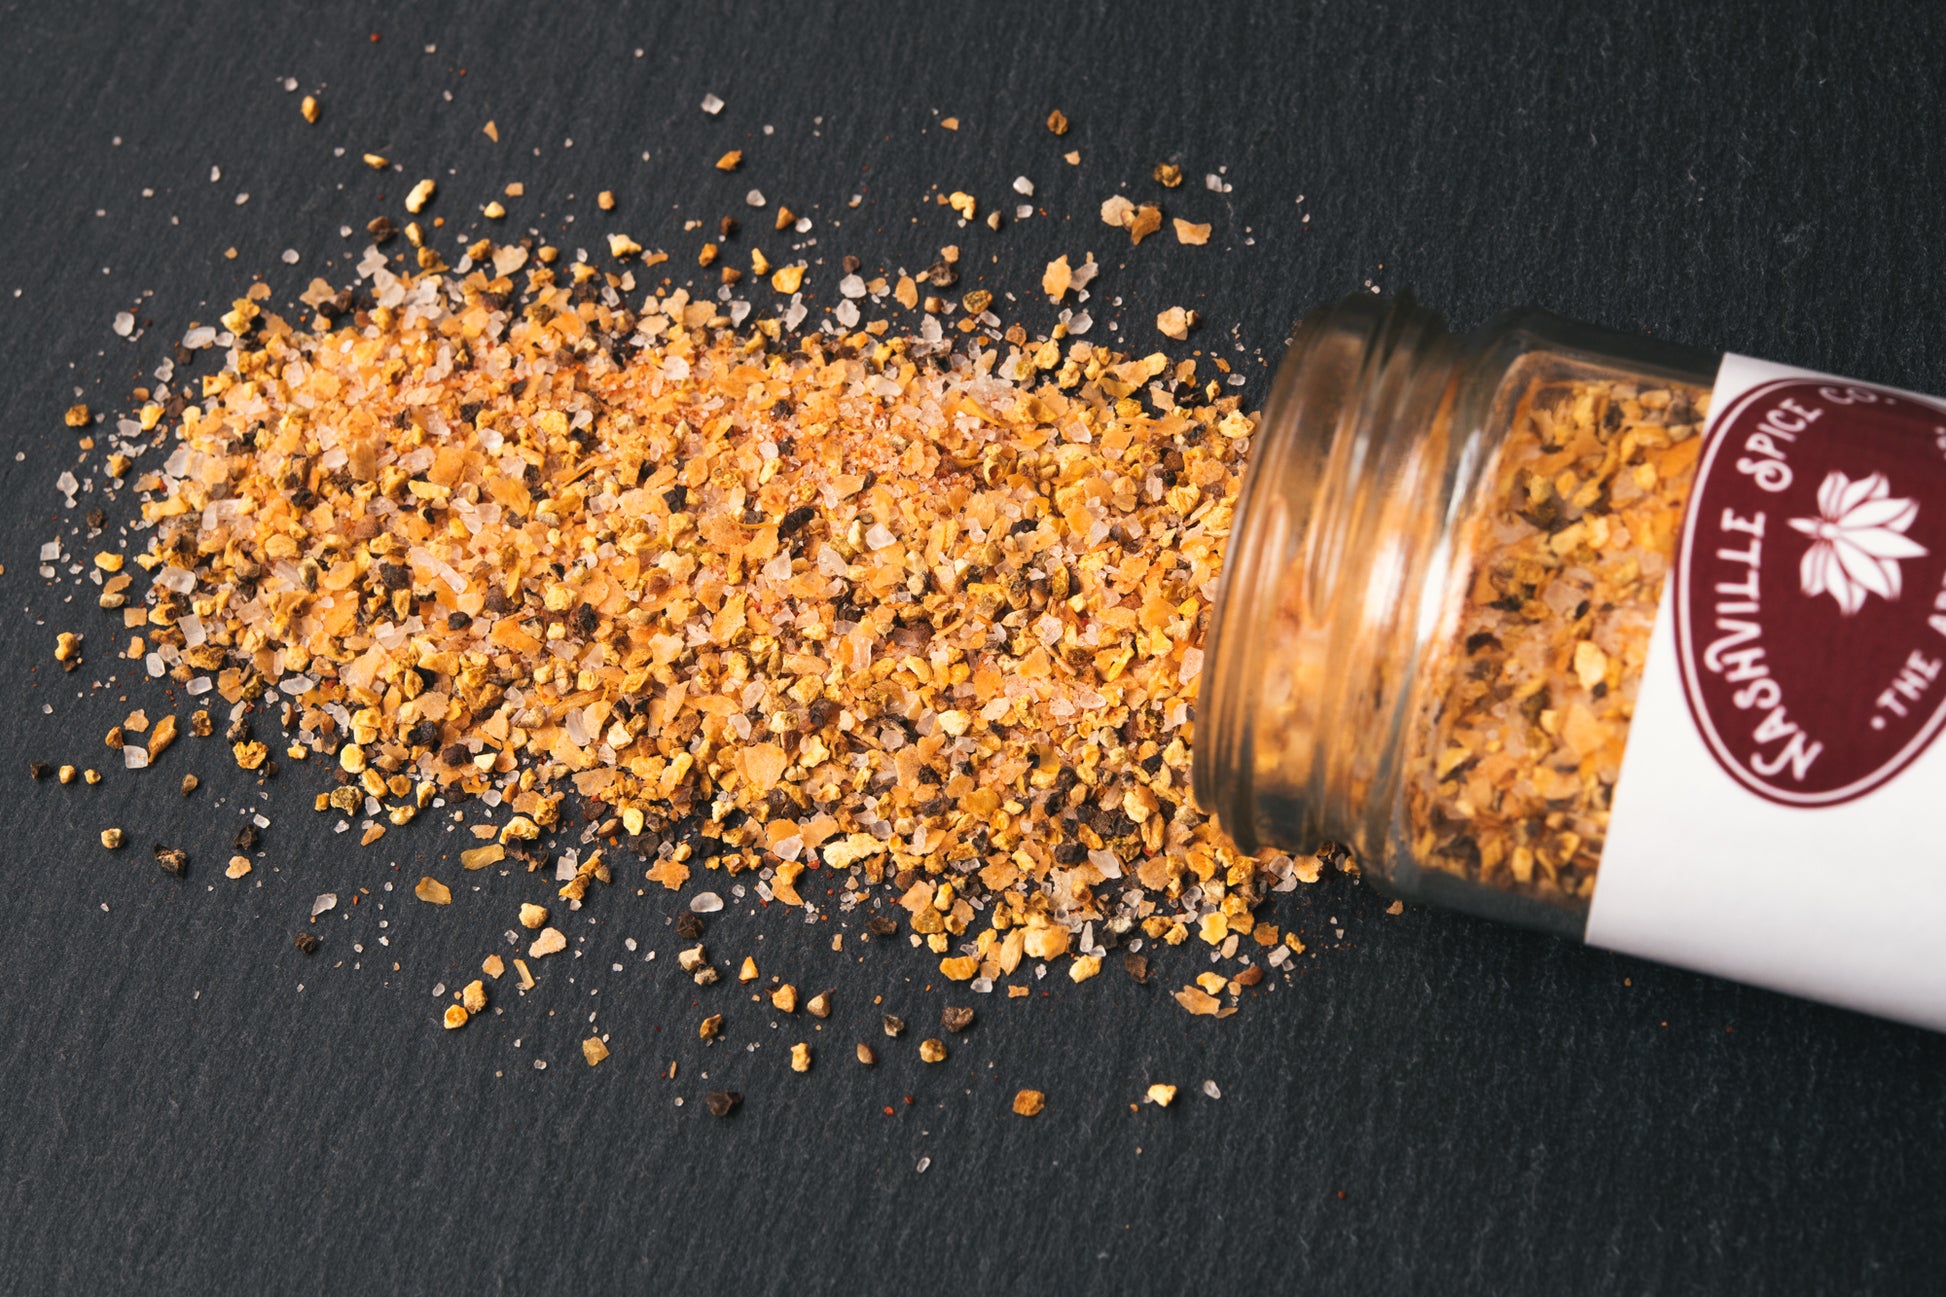 Sea Salt & Vinegar Corn on the Cob Seasoning